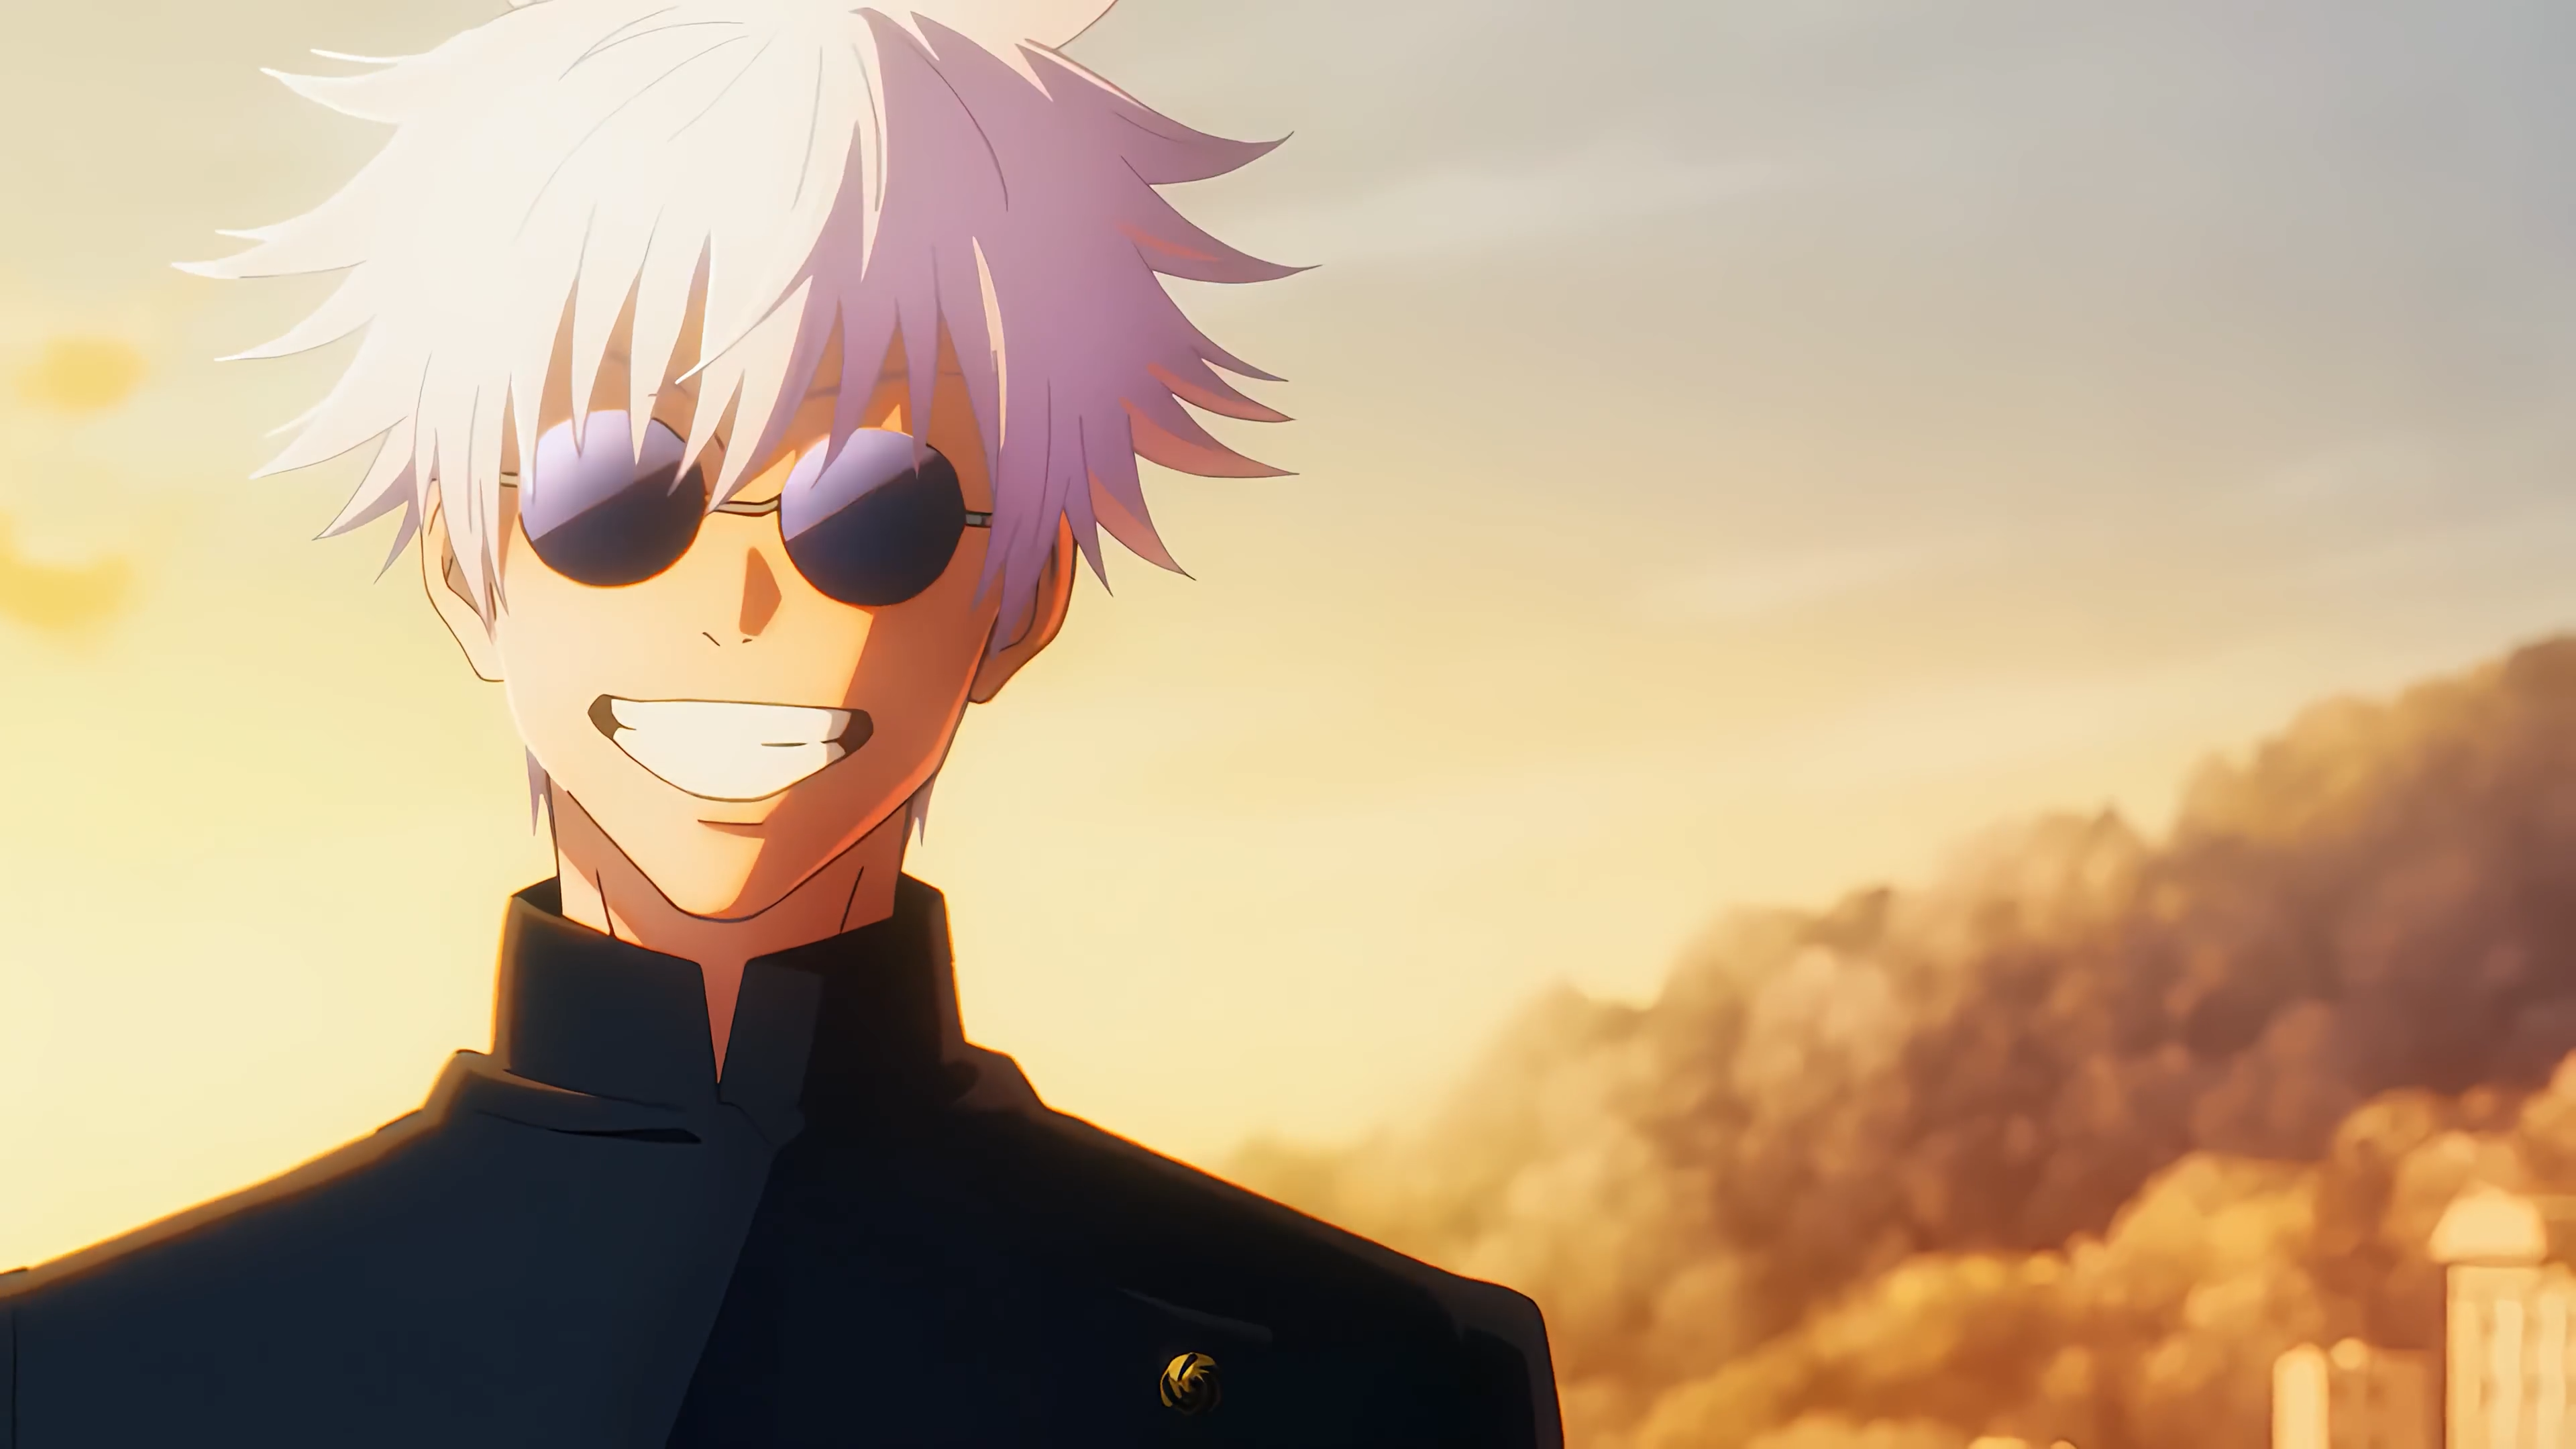 Anime 3840x2160 Jujutsu Kaisen Satoru Gojo anime Anime screenshot anime boys sunglasses sunset sunset glow smiling sky clouds